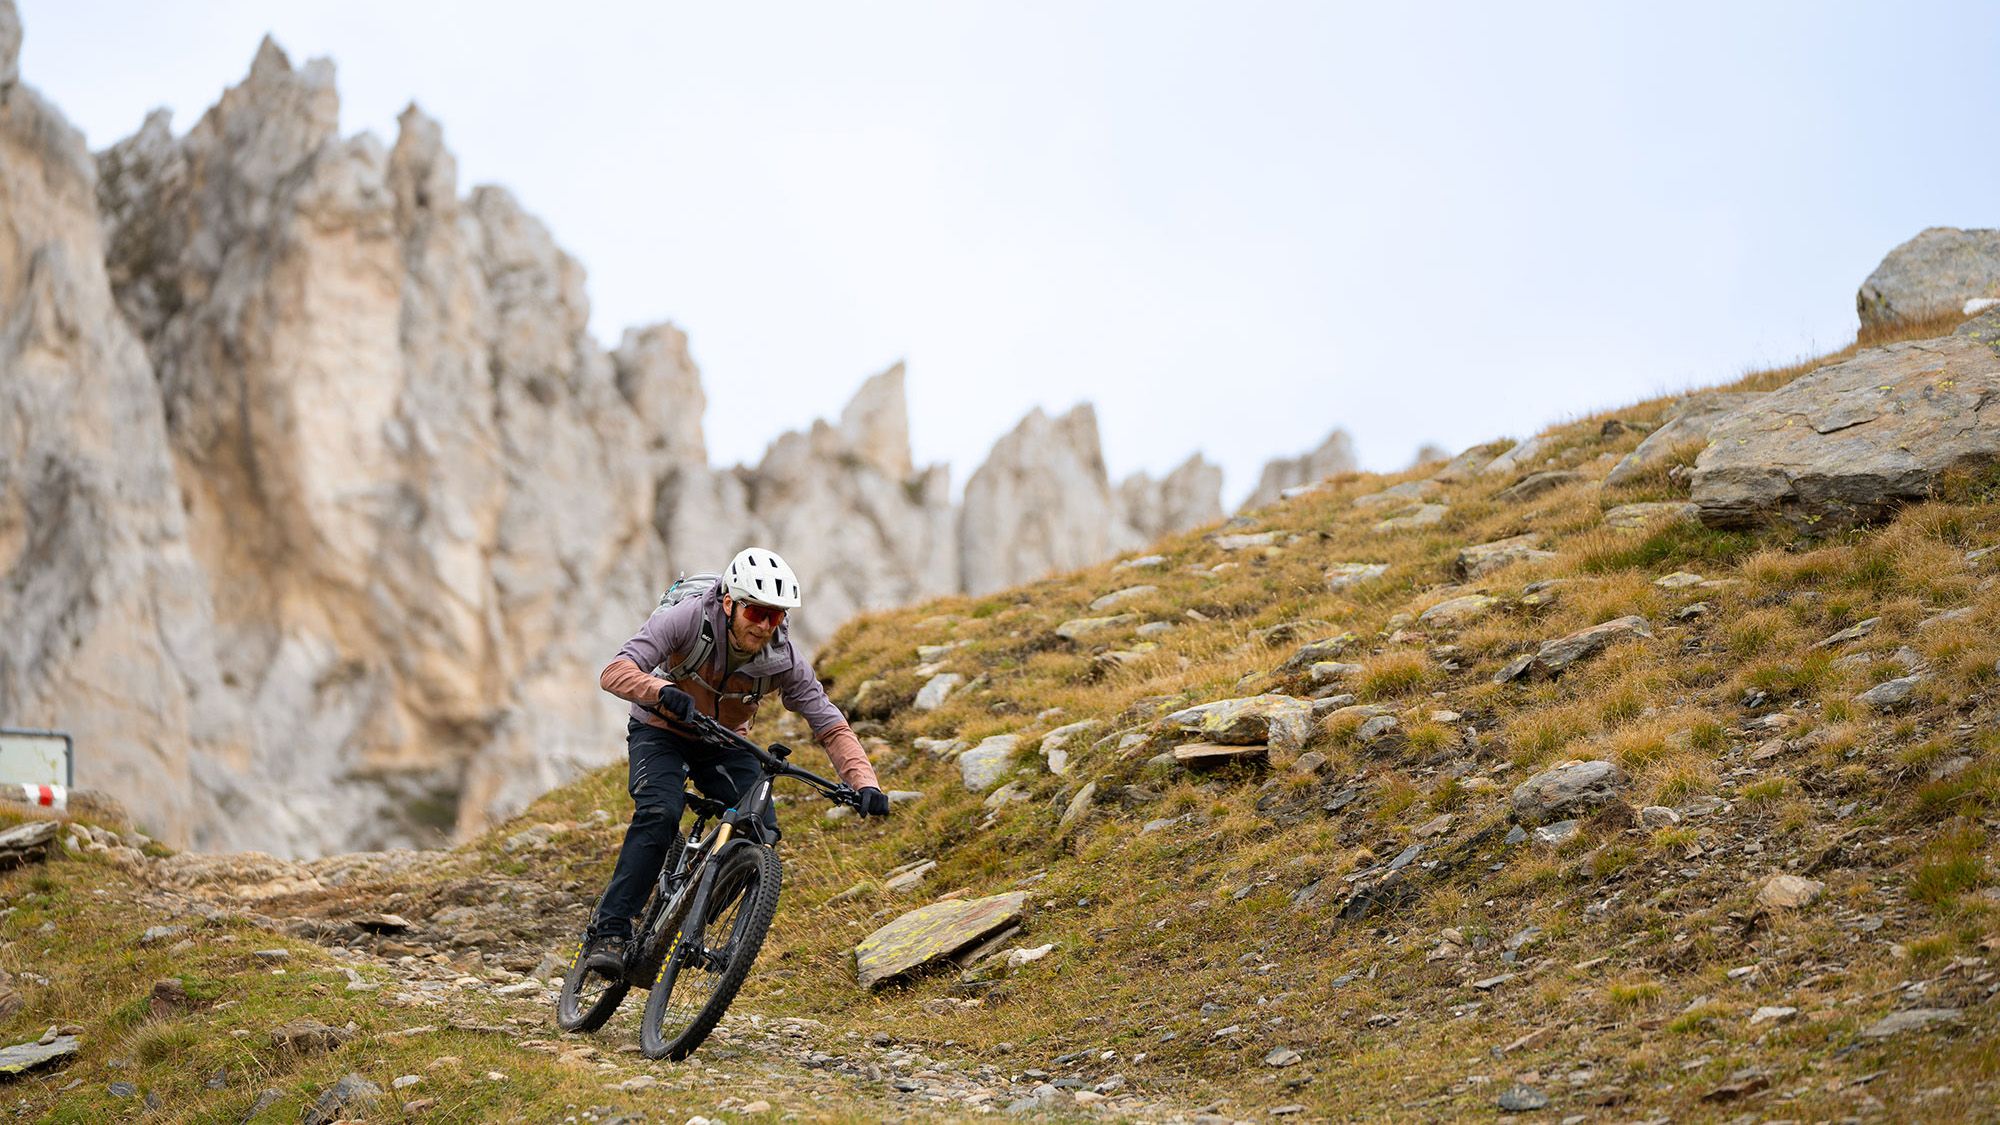 EIn Mountainbiker auf einem Trail vor einer Felsformation.